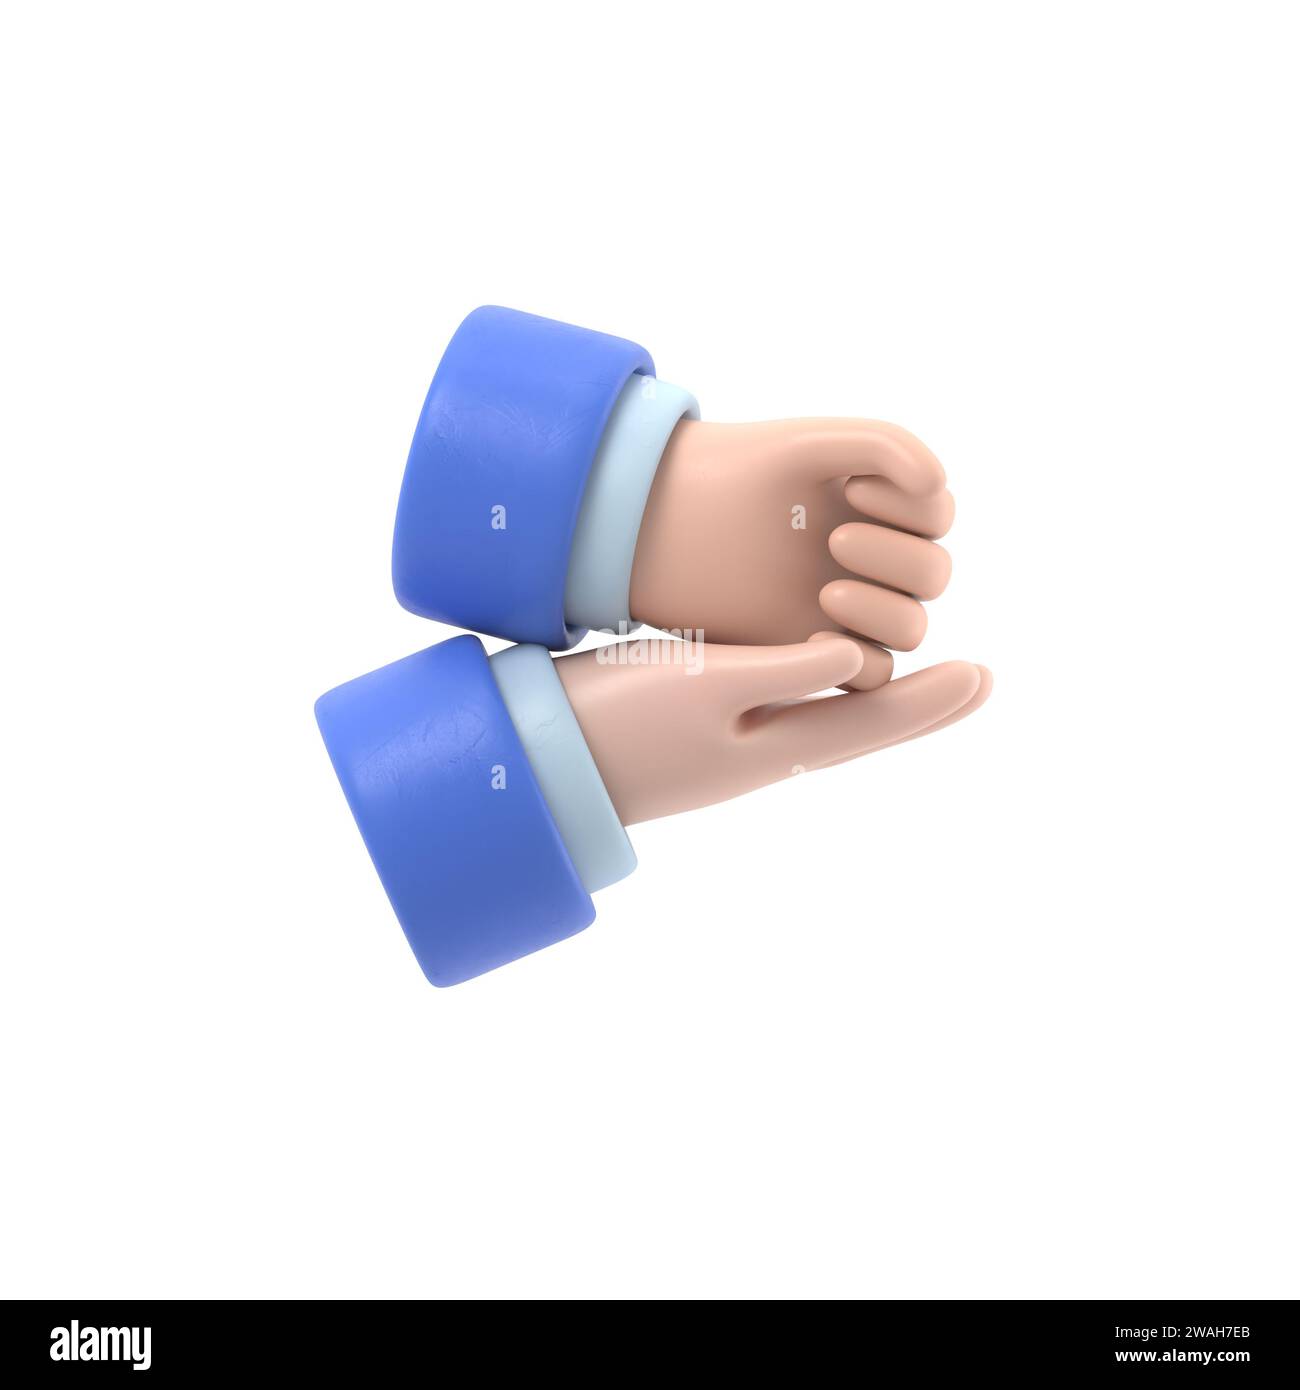 HILFE BEI der Geste ASL. Handgeste, Handfläche und Faust. Nonverbale Kommunikation. Sprachgesten. Flache 3D-Illustration. Handsymbol.3D-Rendering auf weiß Stockfoto